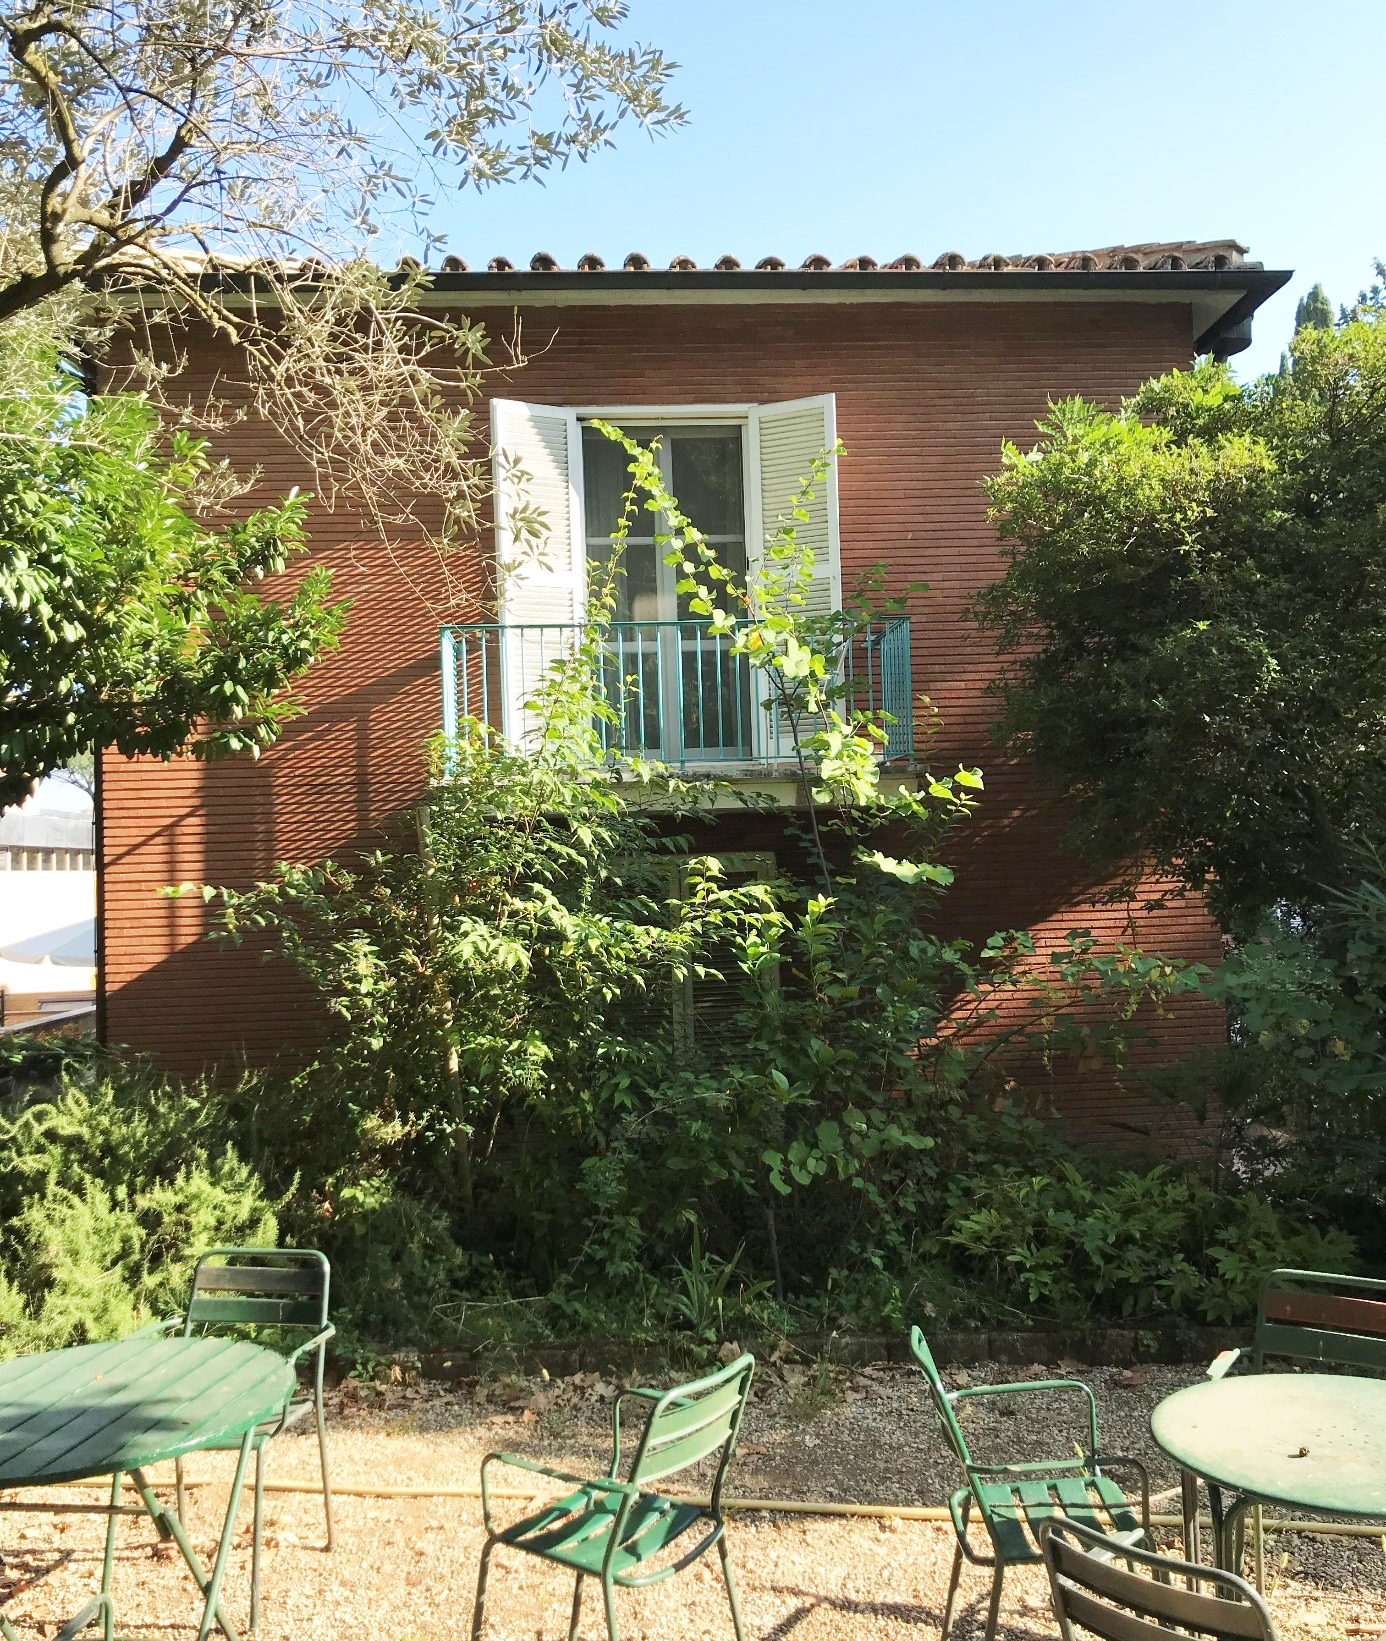 Bild av svenska institutets trädgård och fasad i Rom. Trädgårdsmöbler, buskar, tegelfasad med balkong.